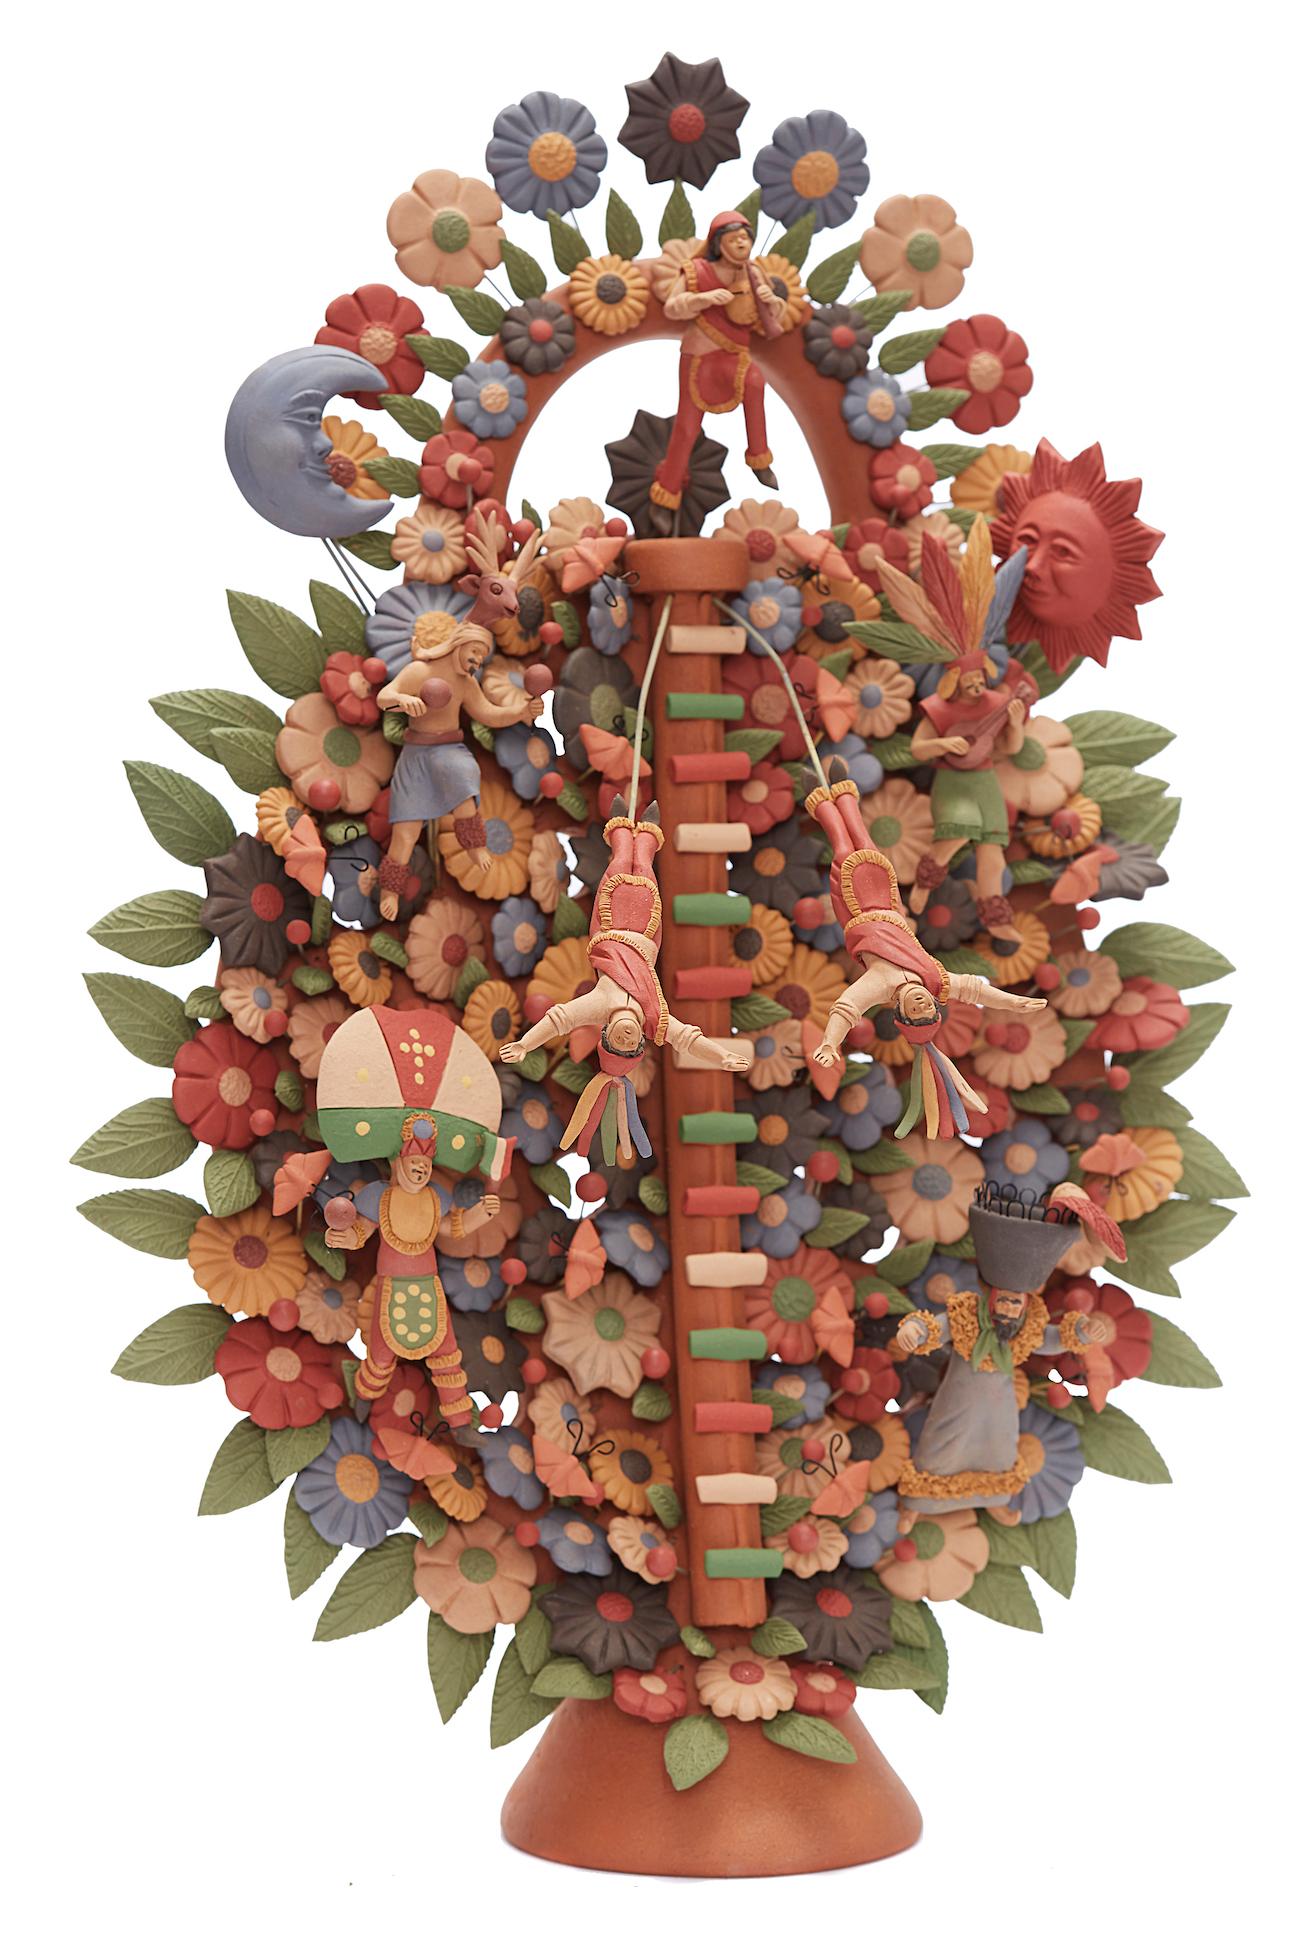 Arbol de Danzantes - Dancers Tree / Ceramics Mexican Folk Art Clay 13